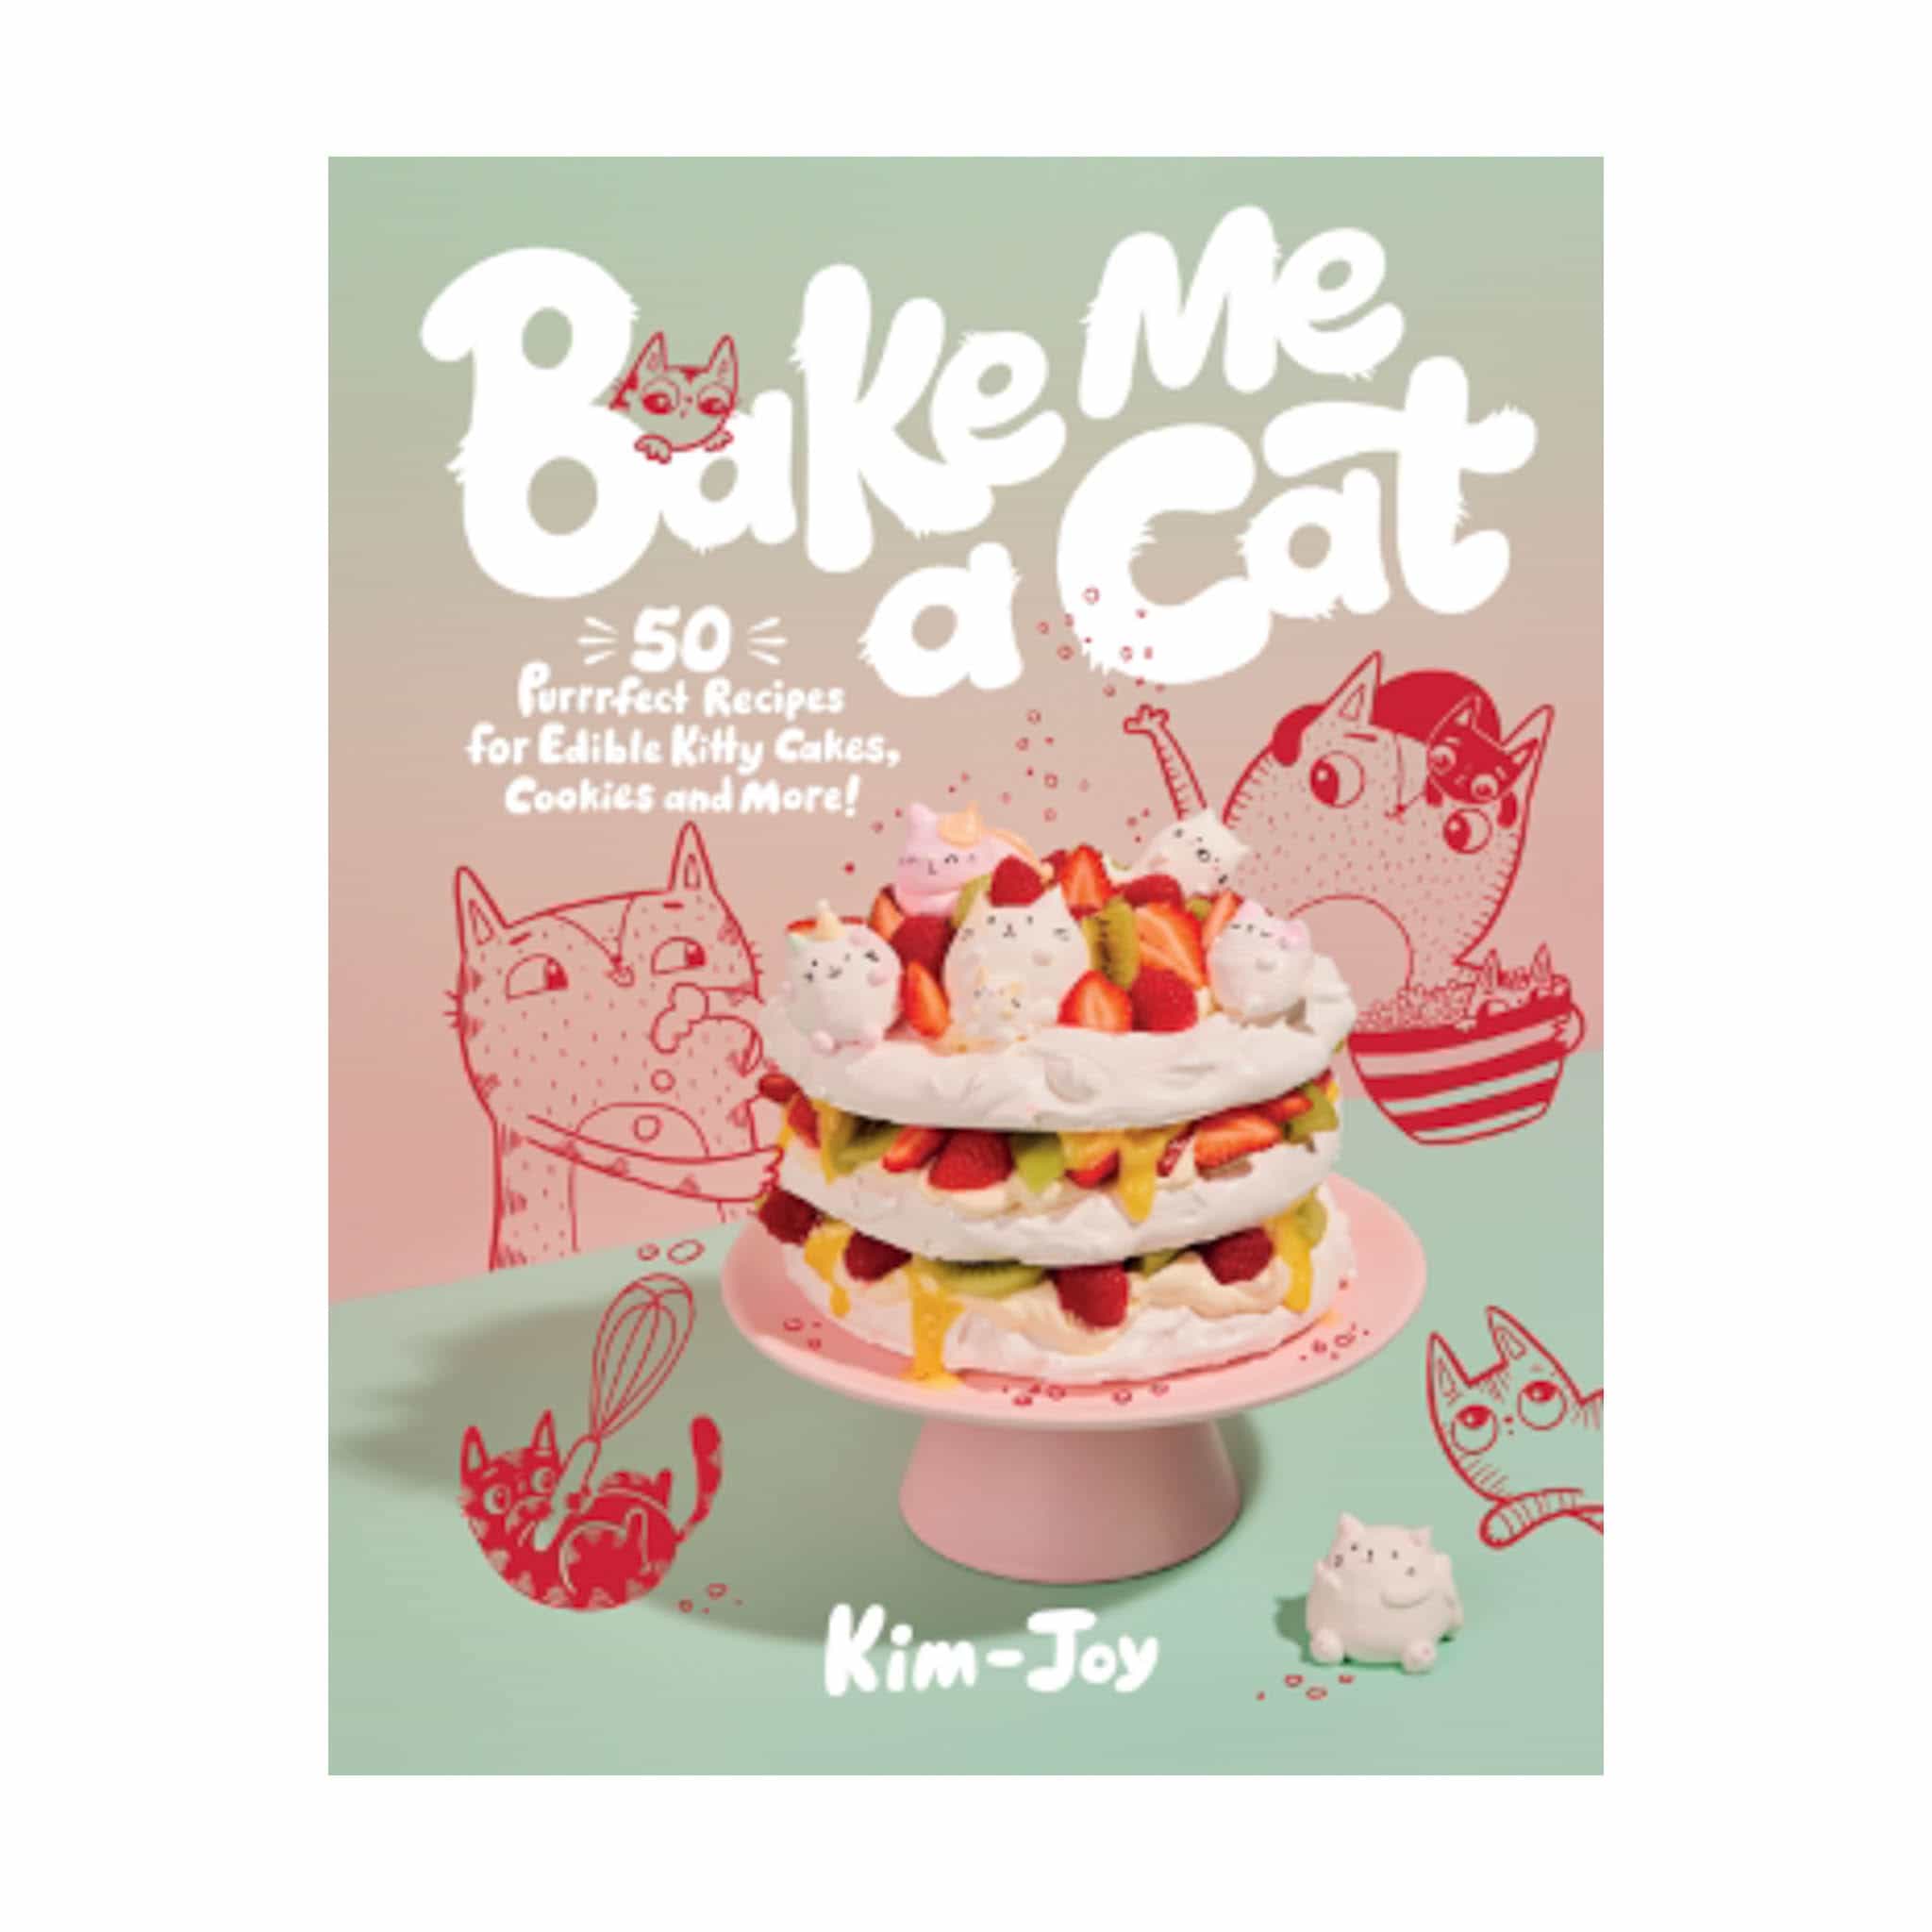 Bake Me a Cat, by Kim-Joy